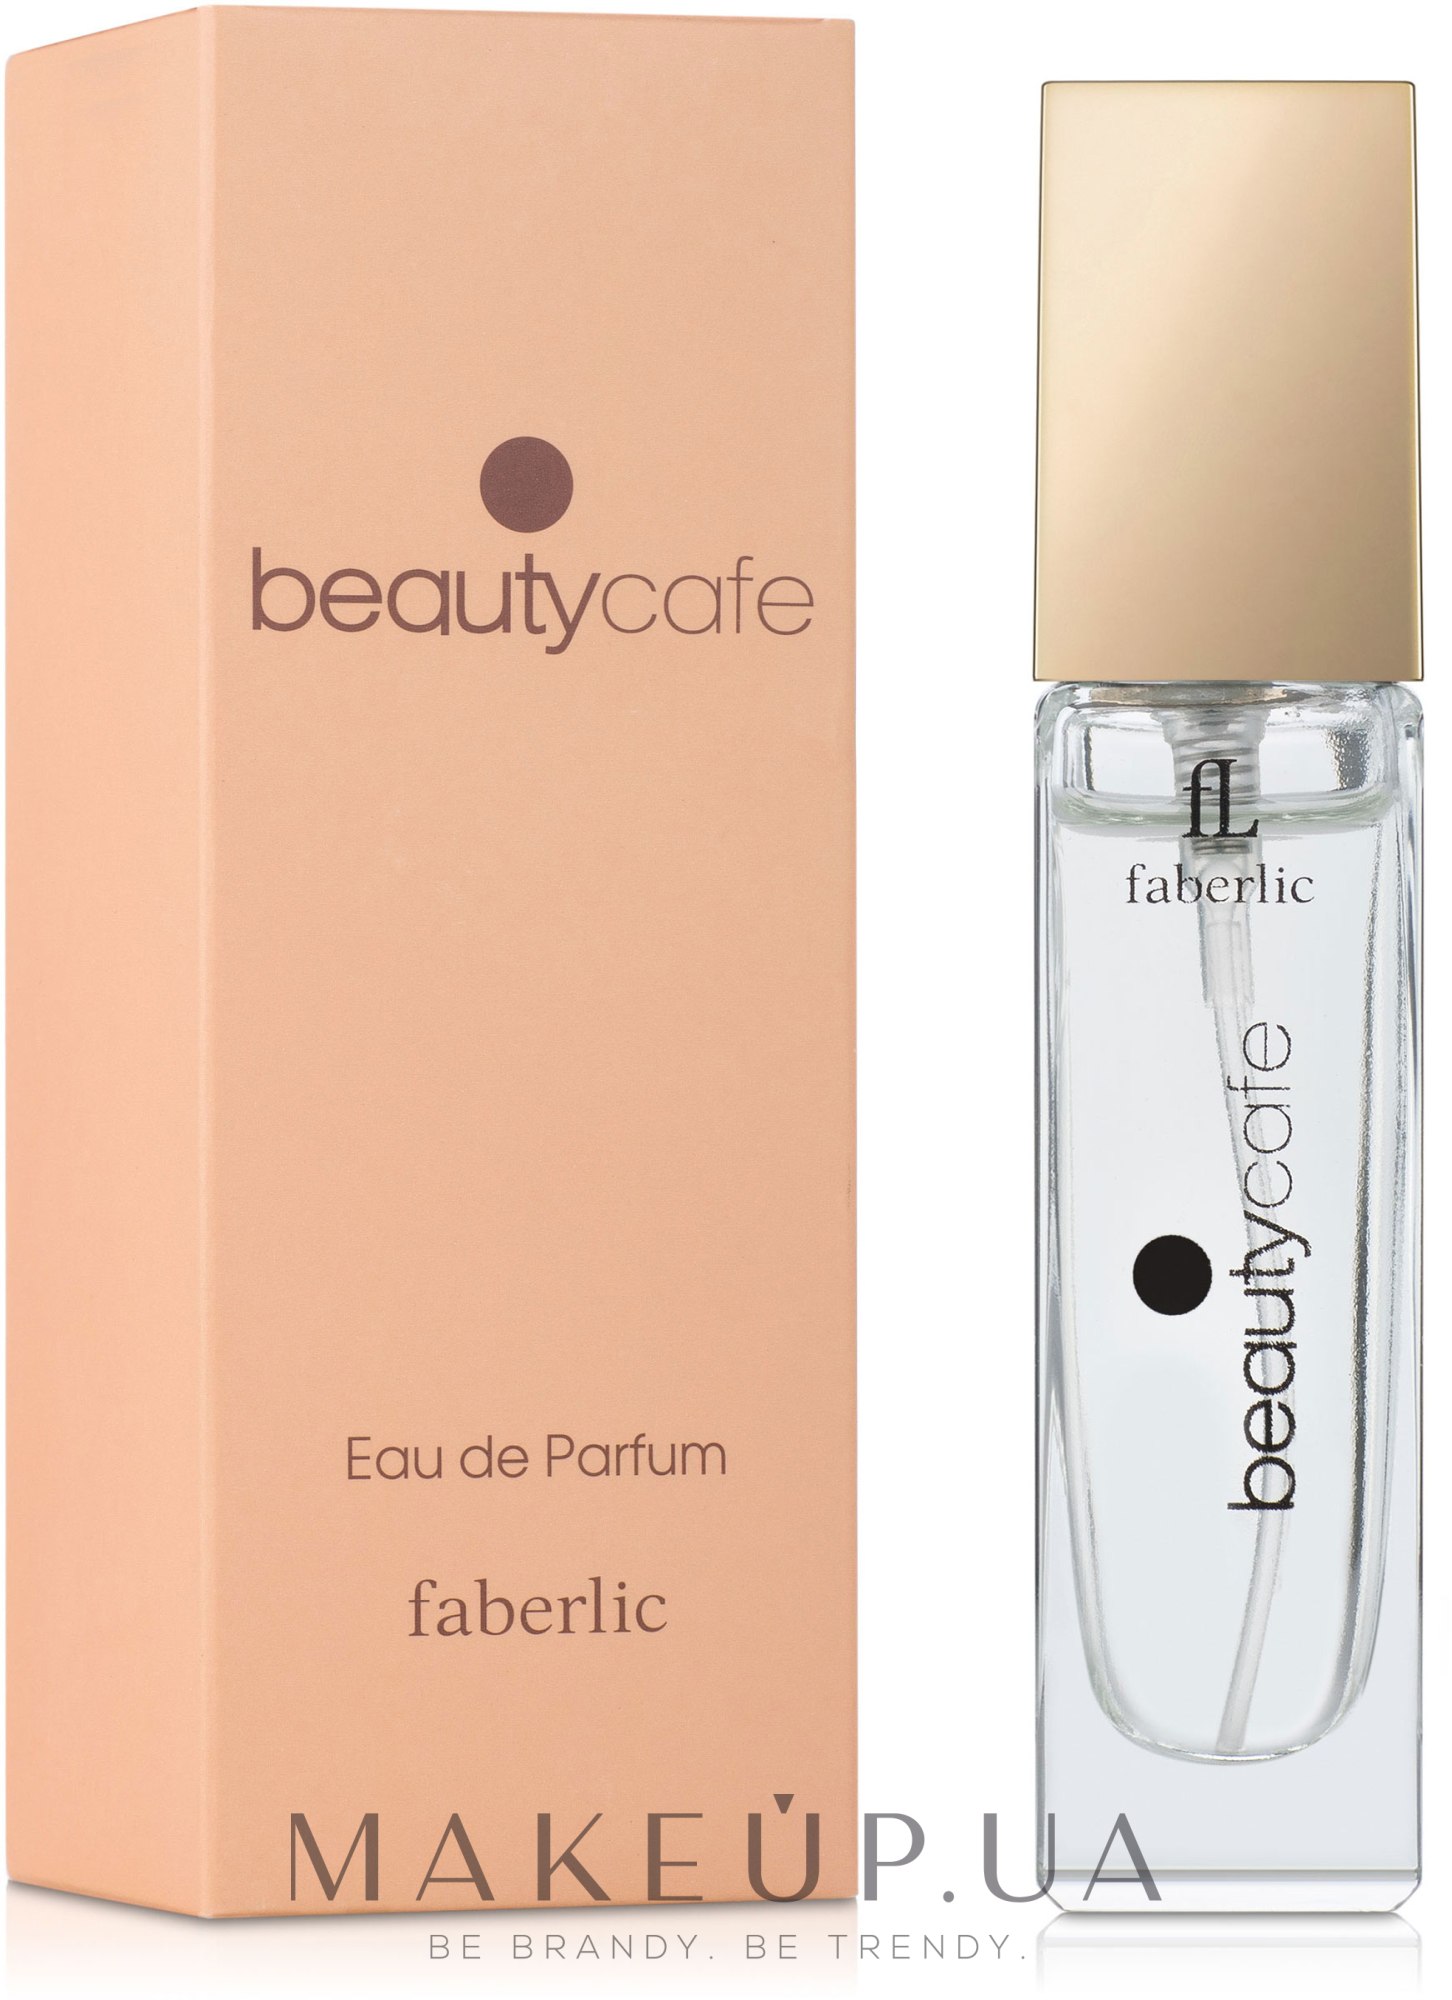 Faberlic Beauty Cafe Parfyumirovannaya Voda Kupit Po Luchshej Cene V Ukraine Makeup Ua